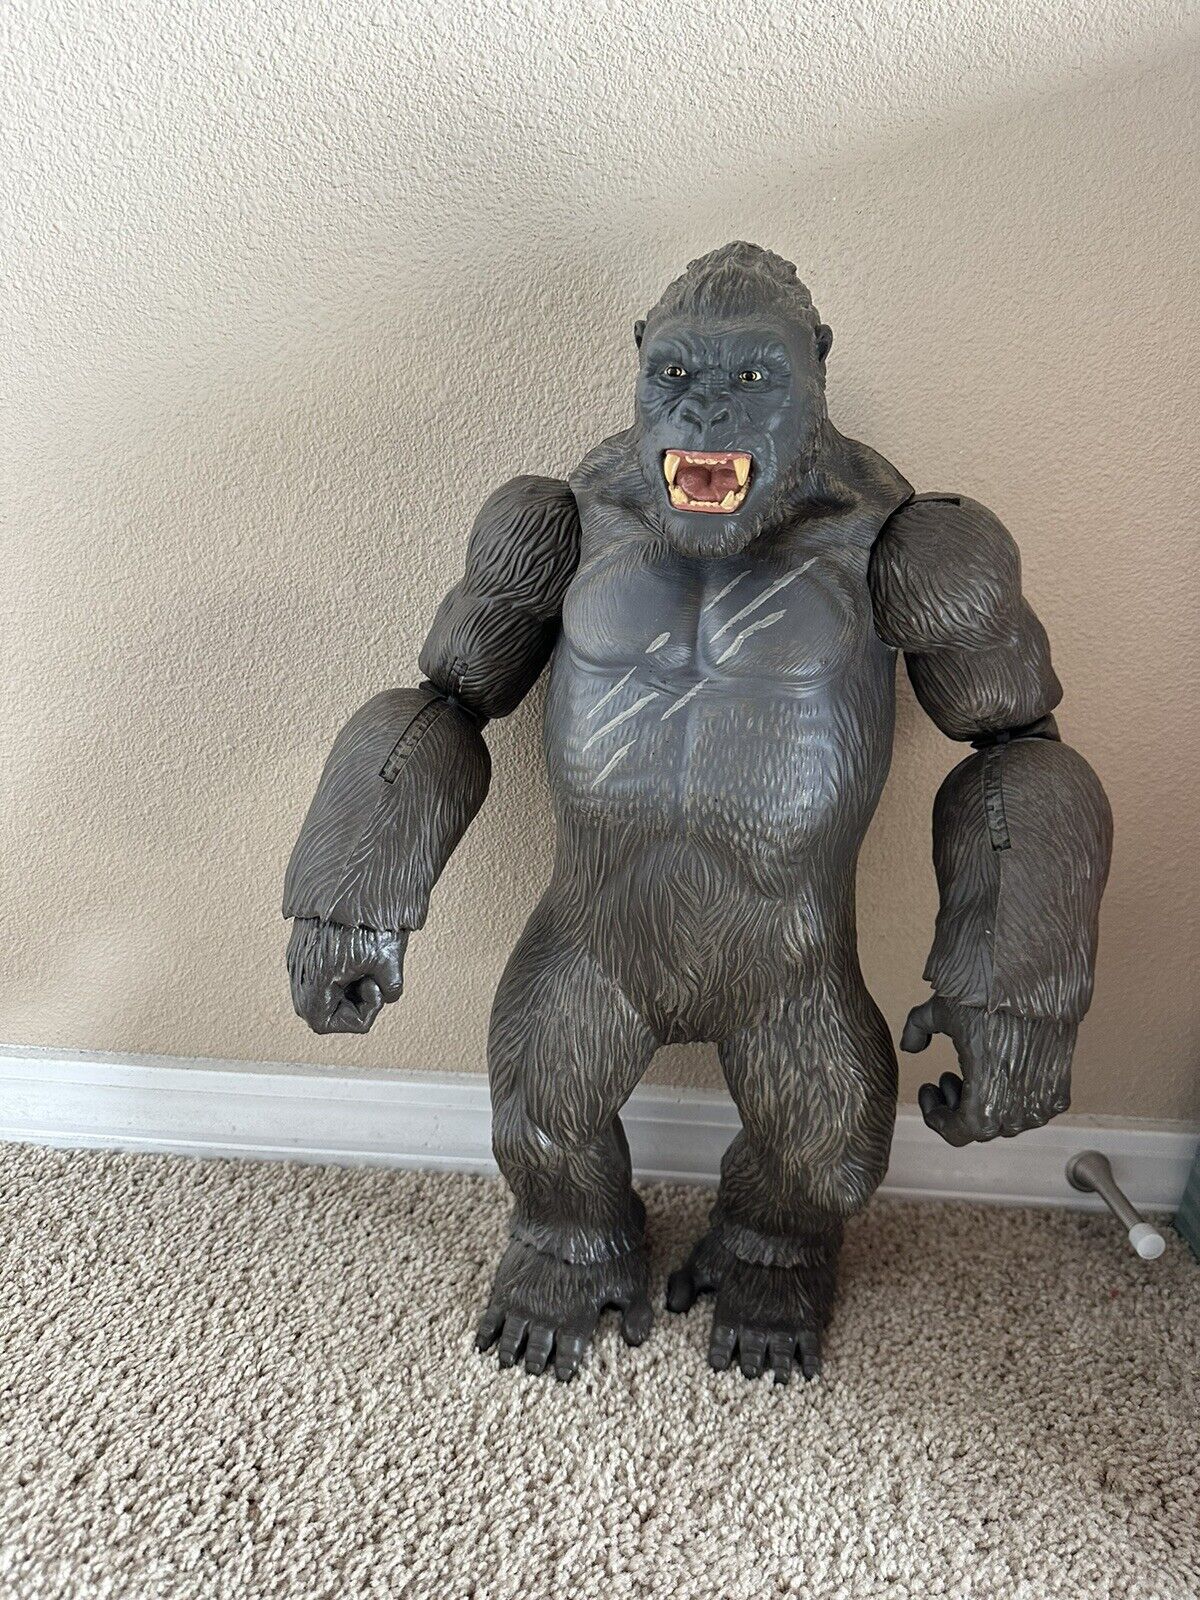 King Kong Gorilla Lanard 2016 Toy Action Figure Black Eyes